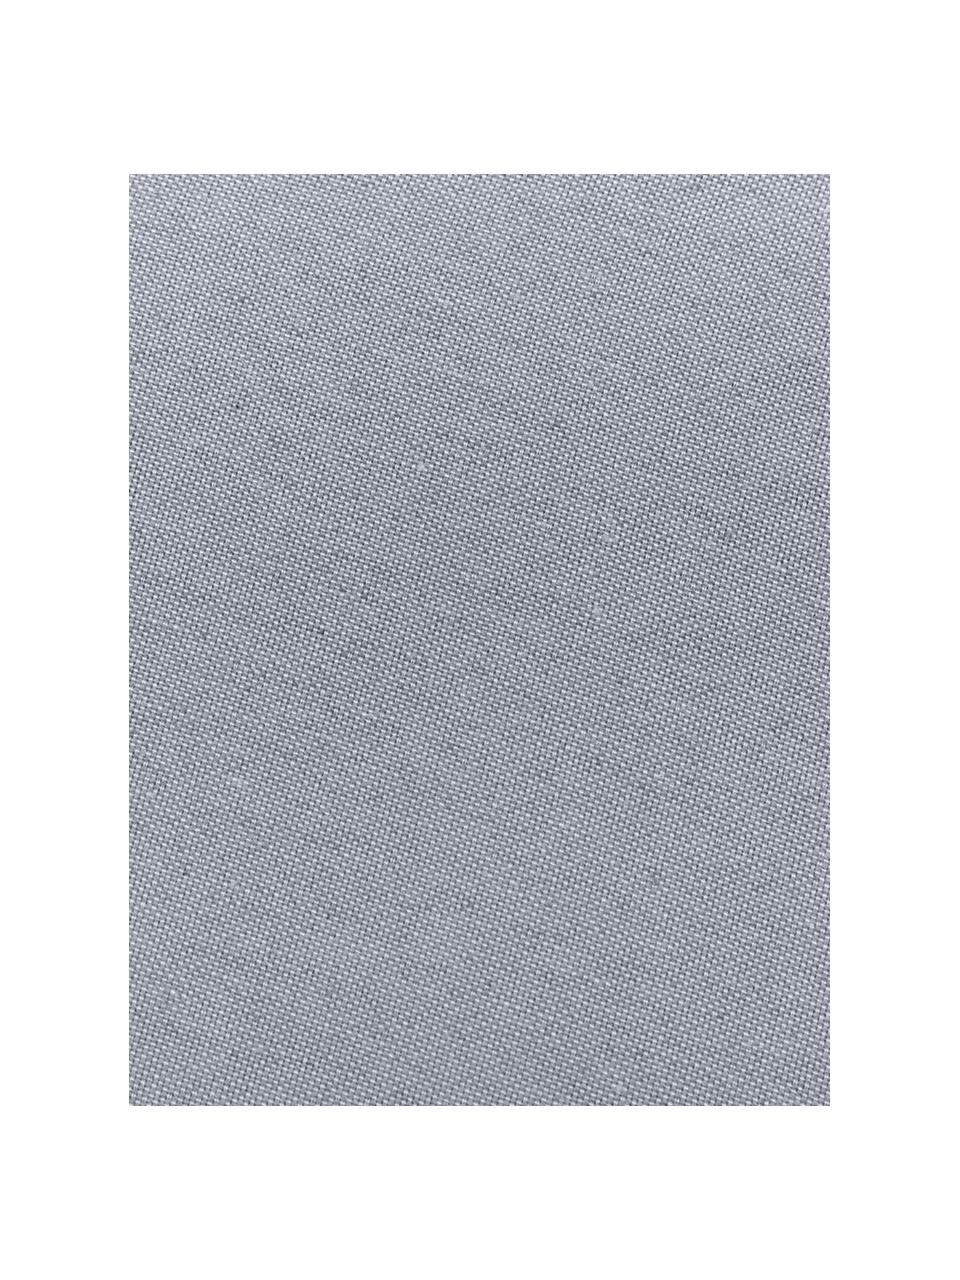 Jednobarevný podsedák na lavici Panama, Světle šedá, Š 48 cm, D 120 cm